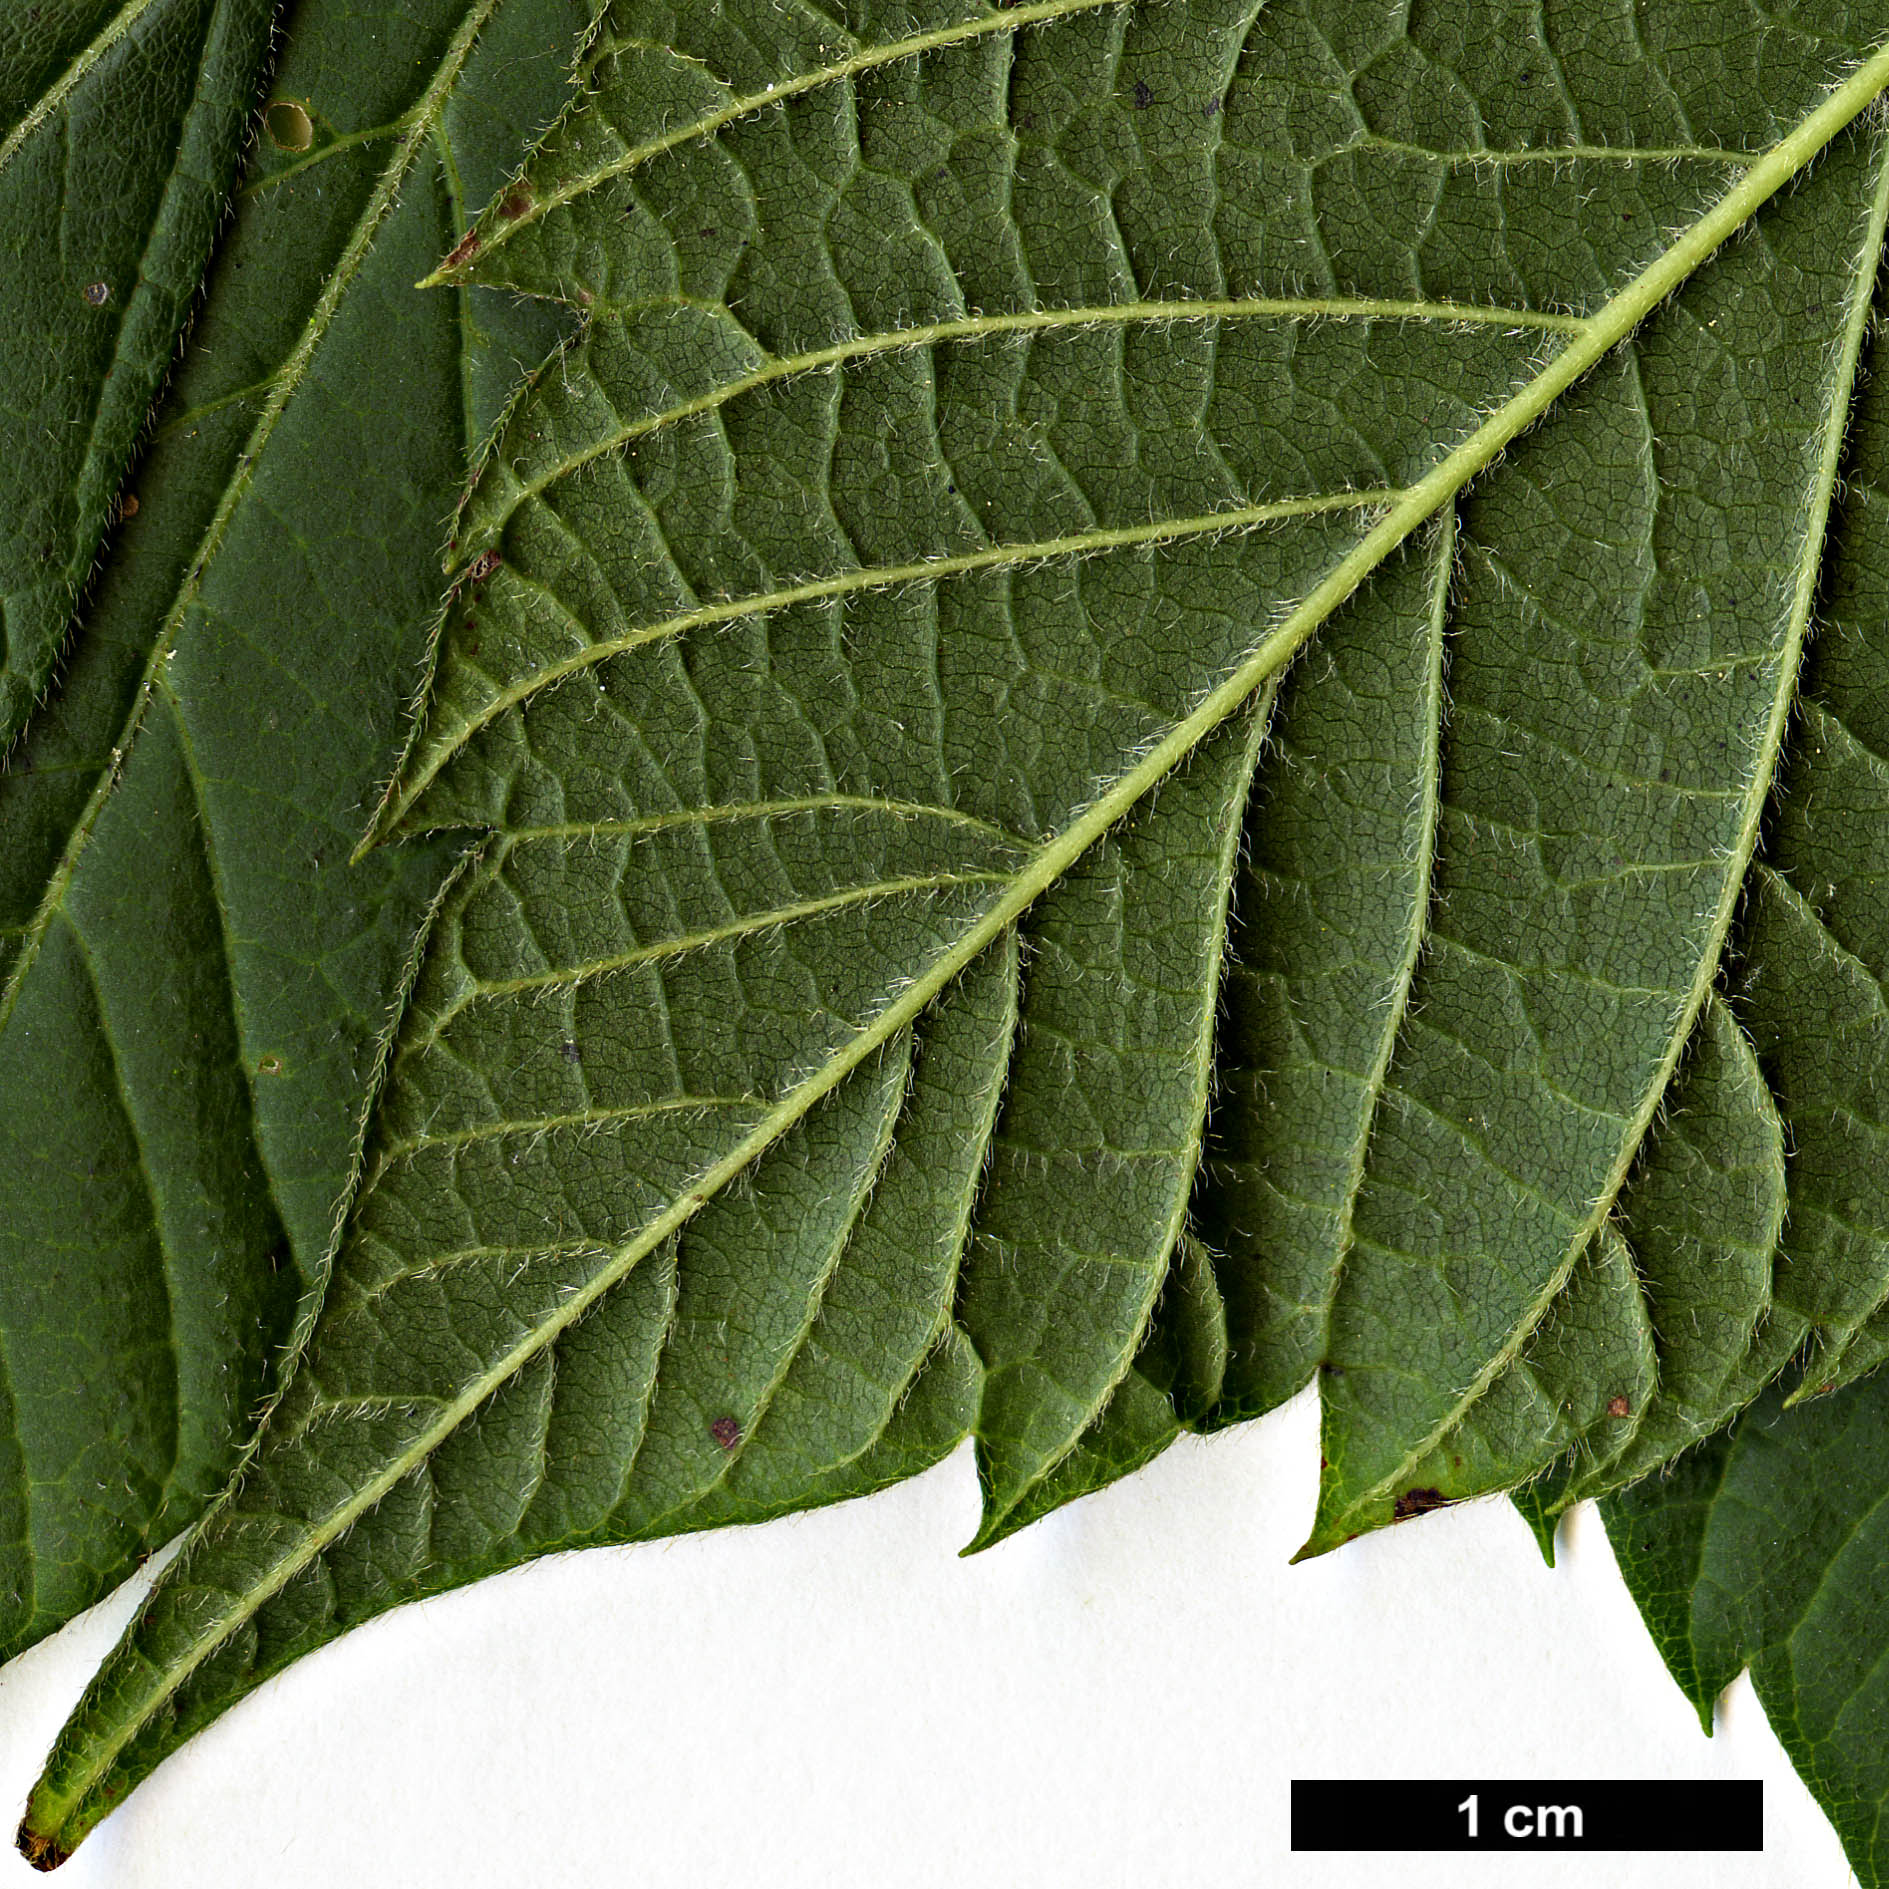 High resolution image: Family: Sapindaceae - Genus: Acer - Taxon: negundo - SpeciesSub: subsp. mexicanum